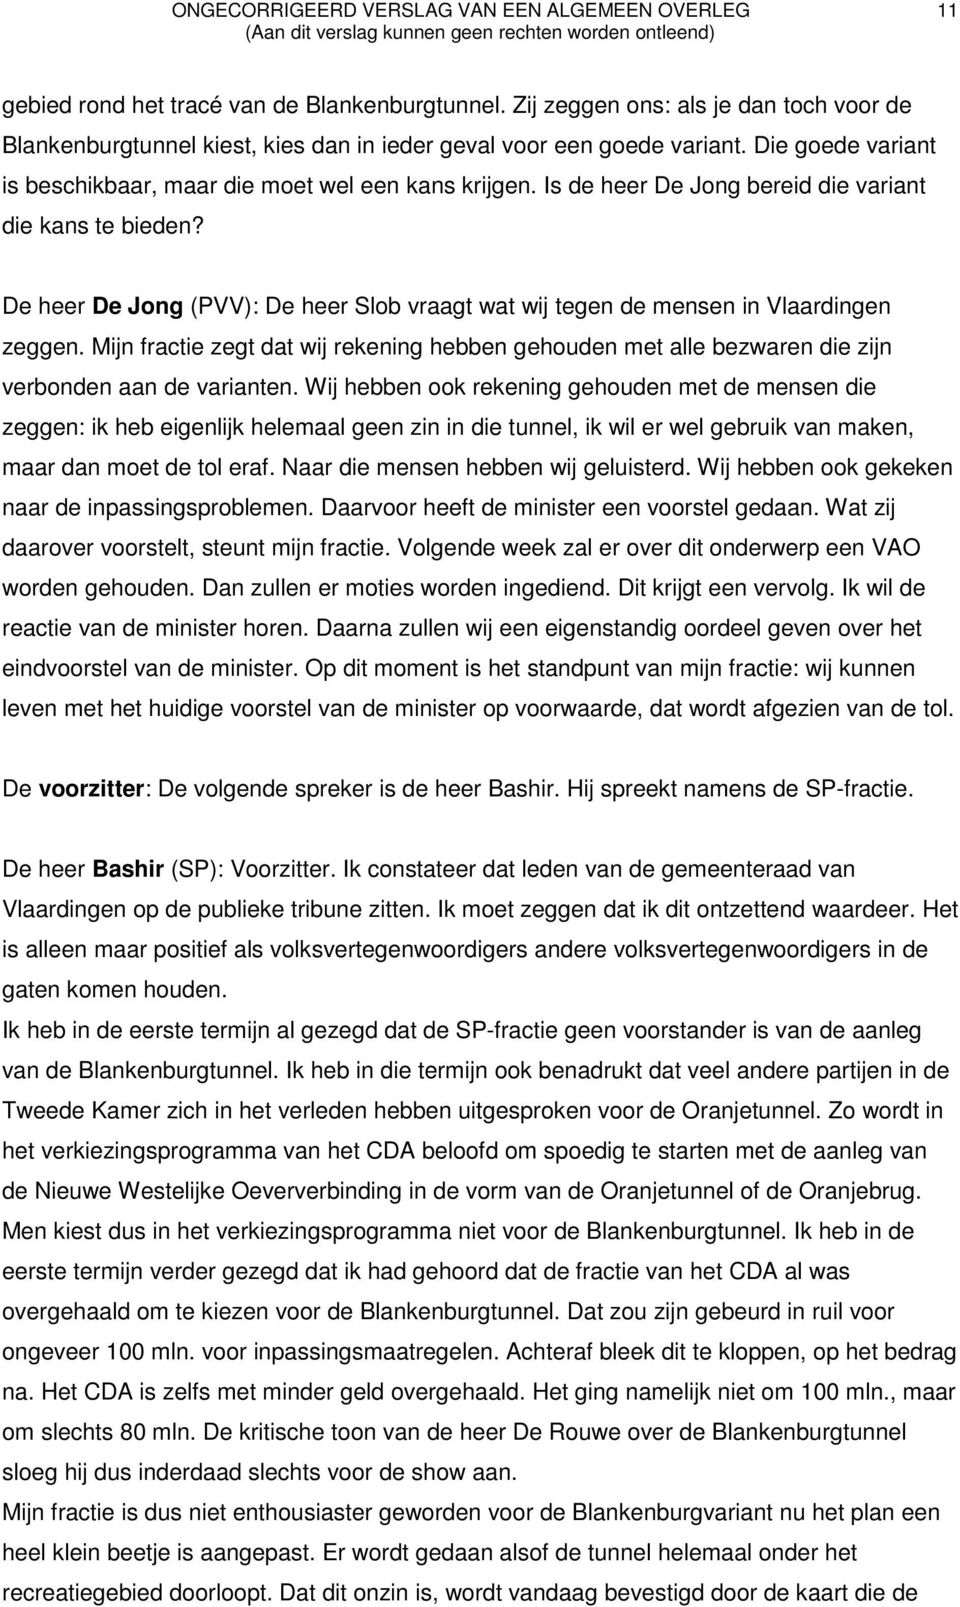 De heer De Jong (PVV): De heer Slob vraagt wat wij tegen de mensen in Vlaardingen zeggen. Mijn fractie zegt dat wij rekening hebben gehouden met alle bezwaren die zijn verbonden aan de varianten.